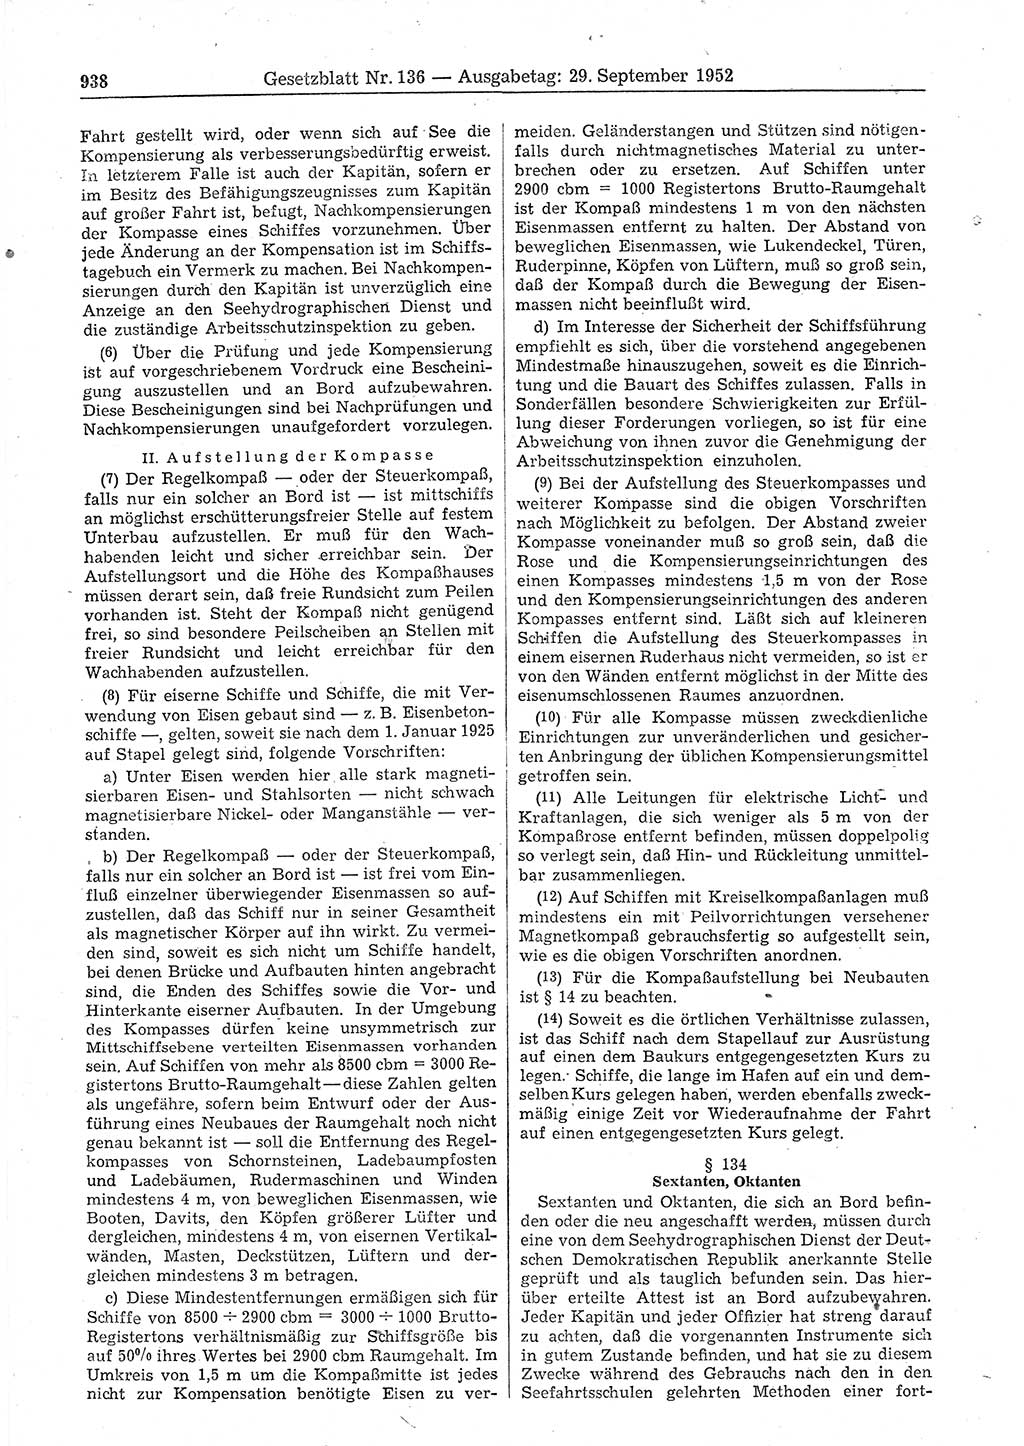 Gesetzblatt (GBl.) der Deutschen Demokratischen Republik (DDR) 1952, Seite 938 (GBl. DDR 1952, S. 938)